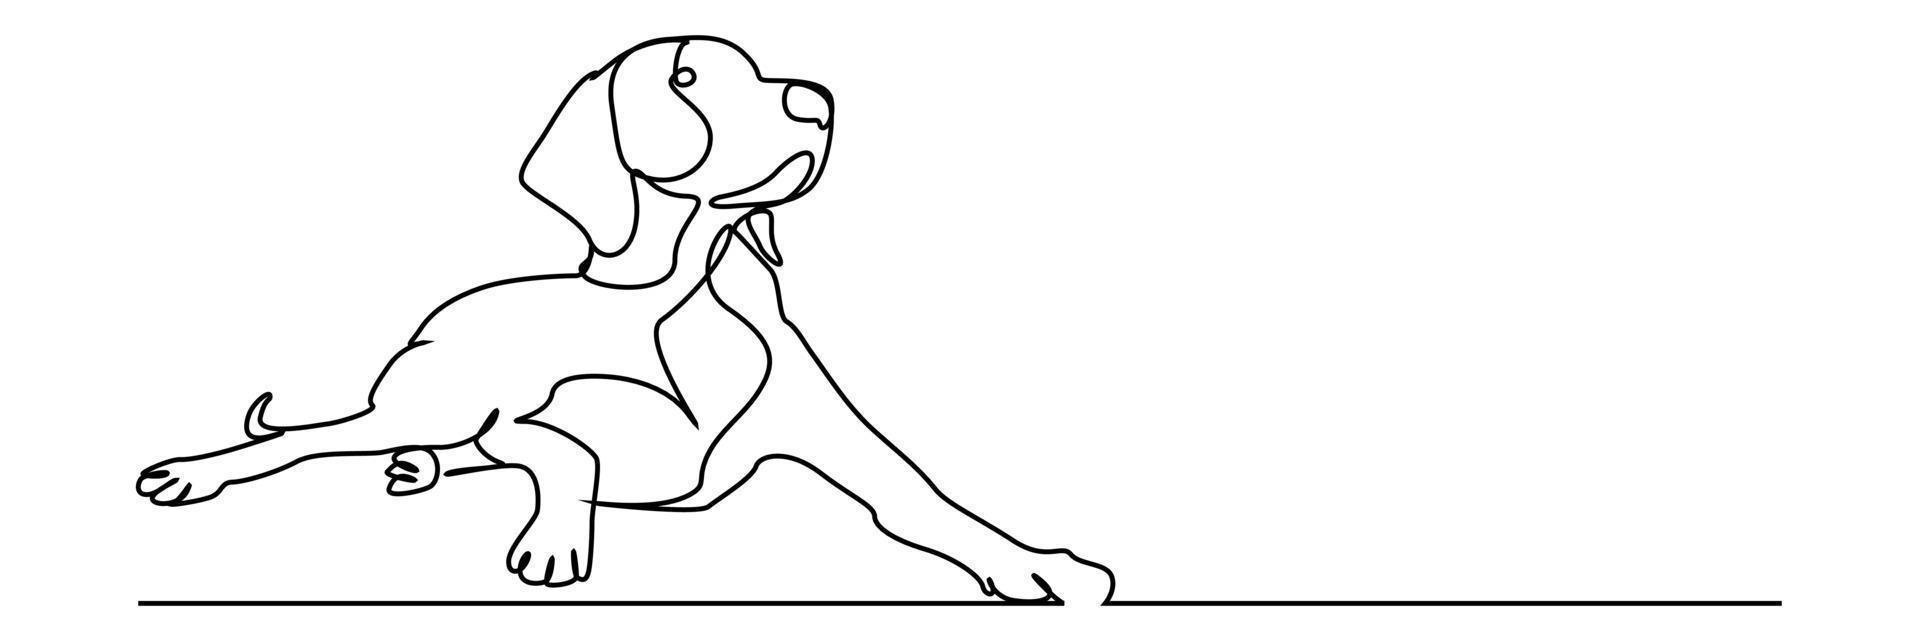 hond tekening vector met behulp van continue één lijn kunststijl geïsoleerd op een witte achtergrond.